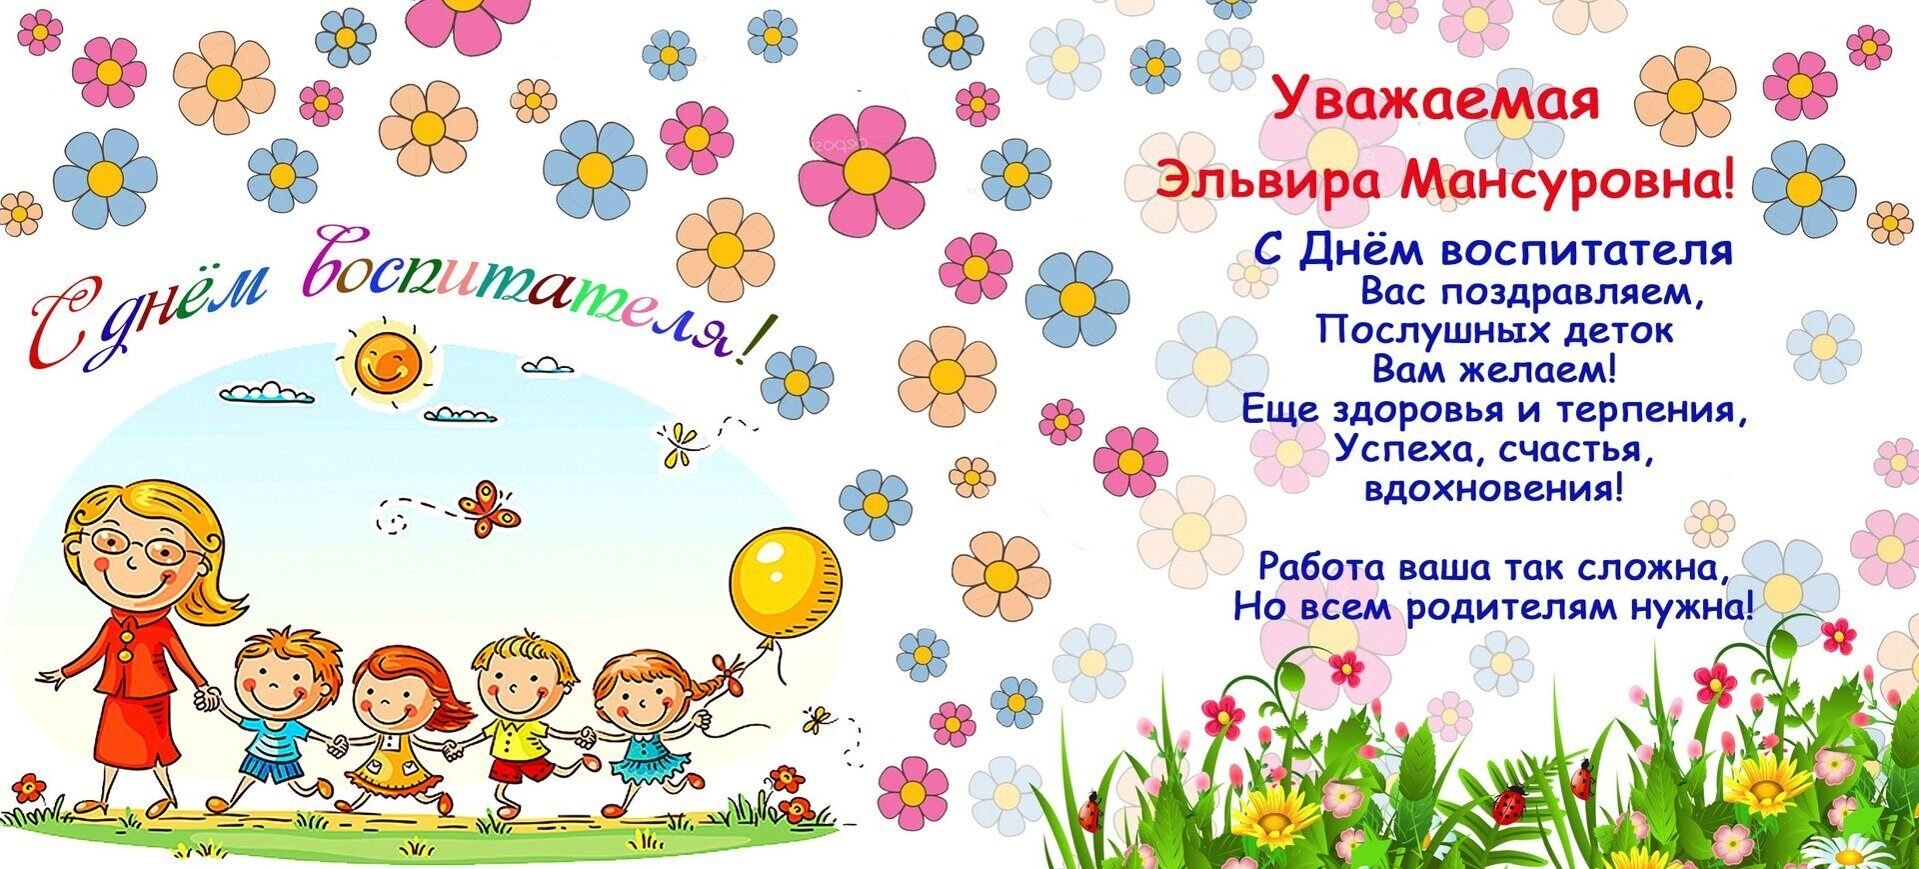 Сценарий праздника «День воспитателя» в детском саду